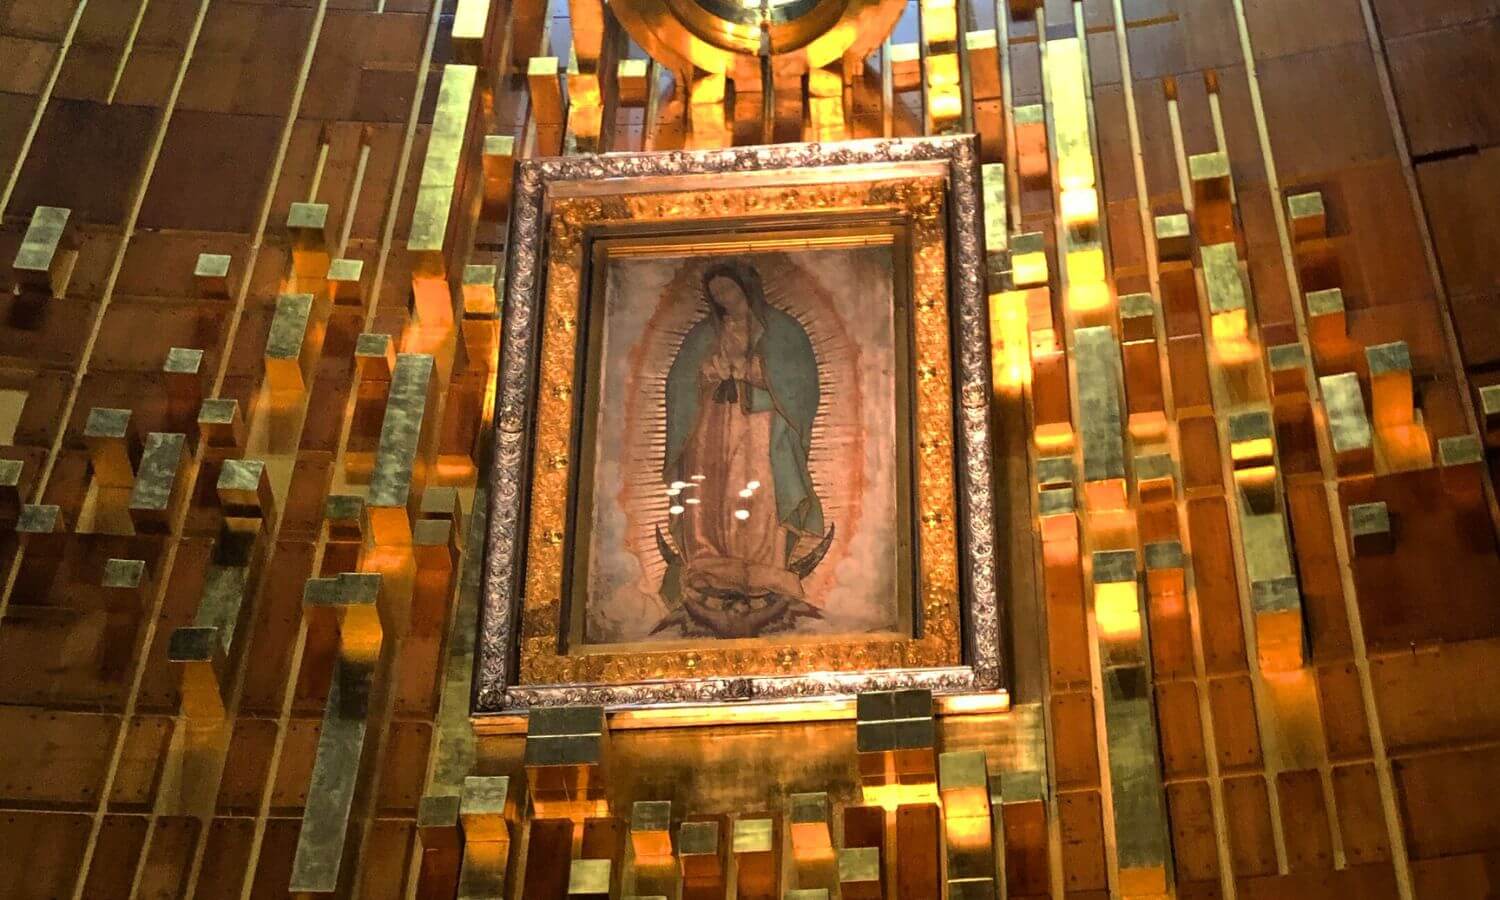 Dia de la Virgen de Guadalupe